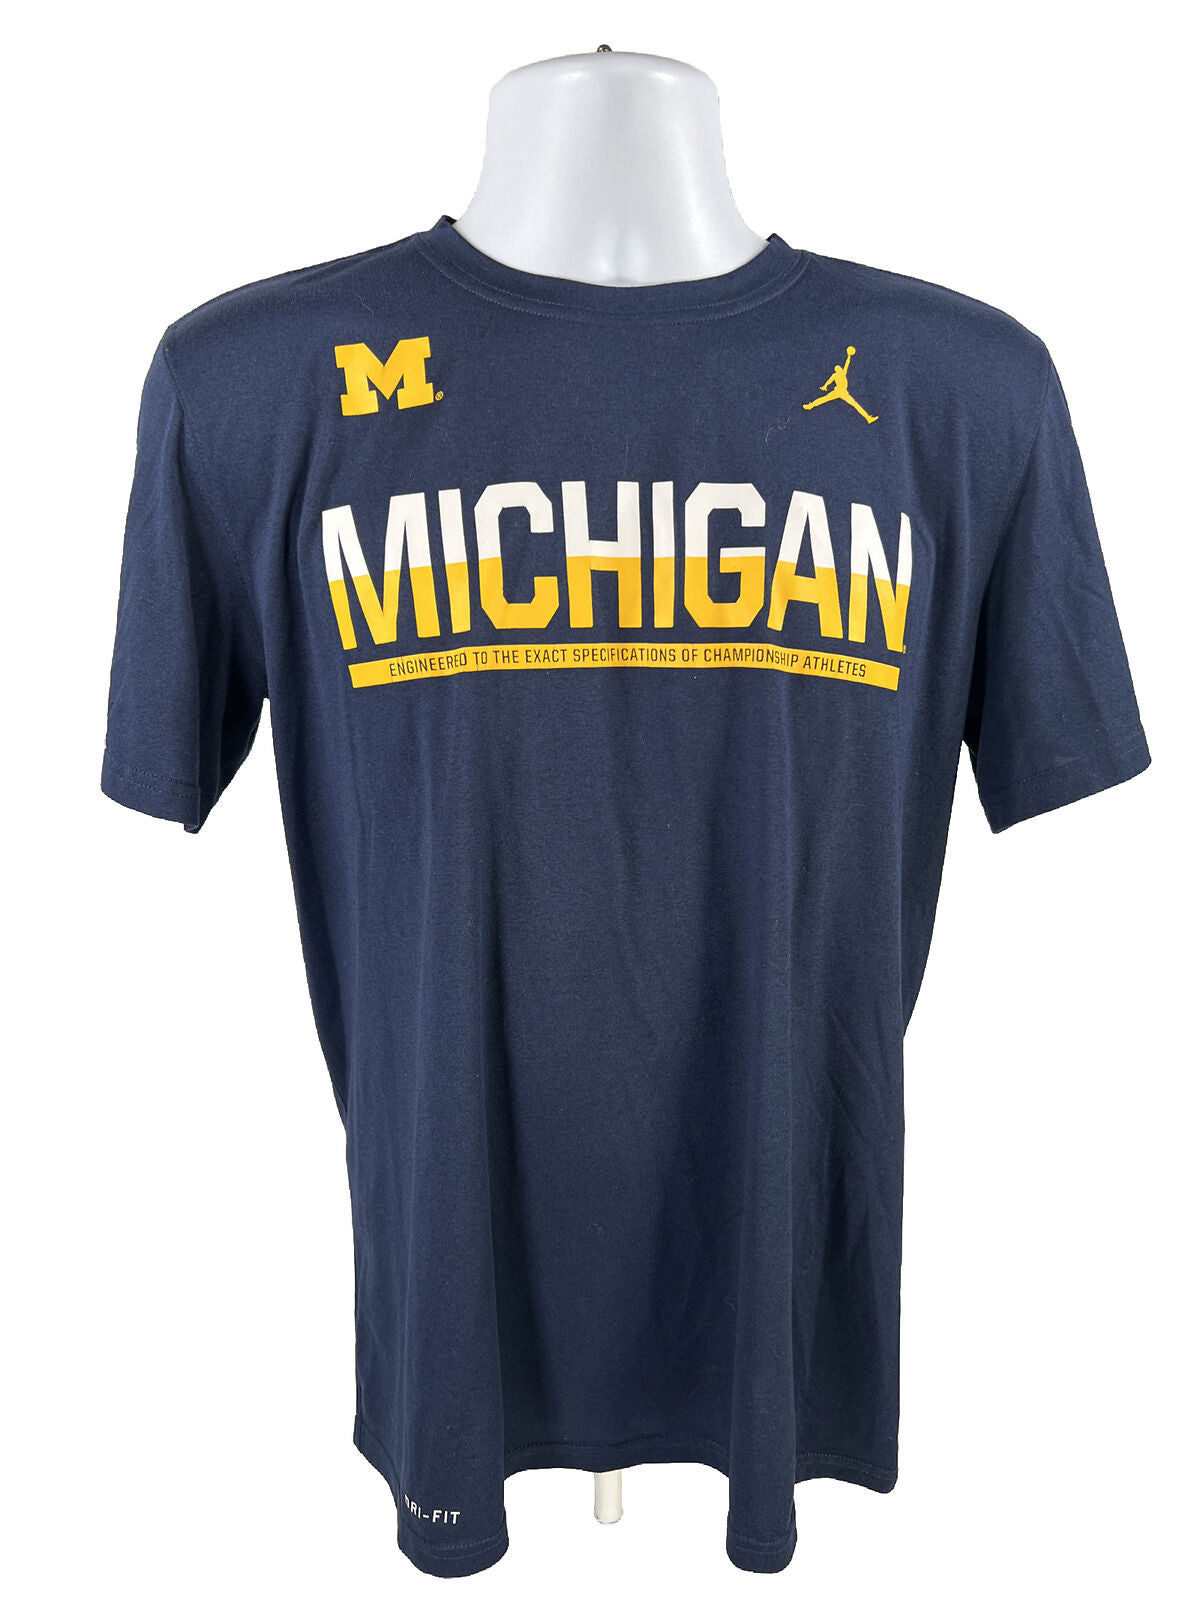 Camiseta deportiva Nike de la Universidad de Michigan azul para hombre - M